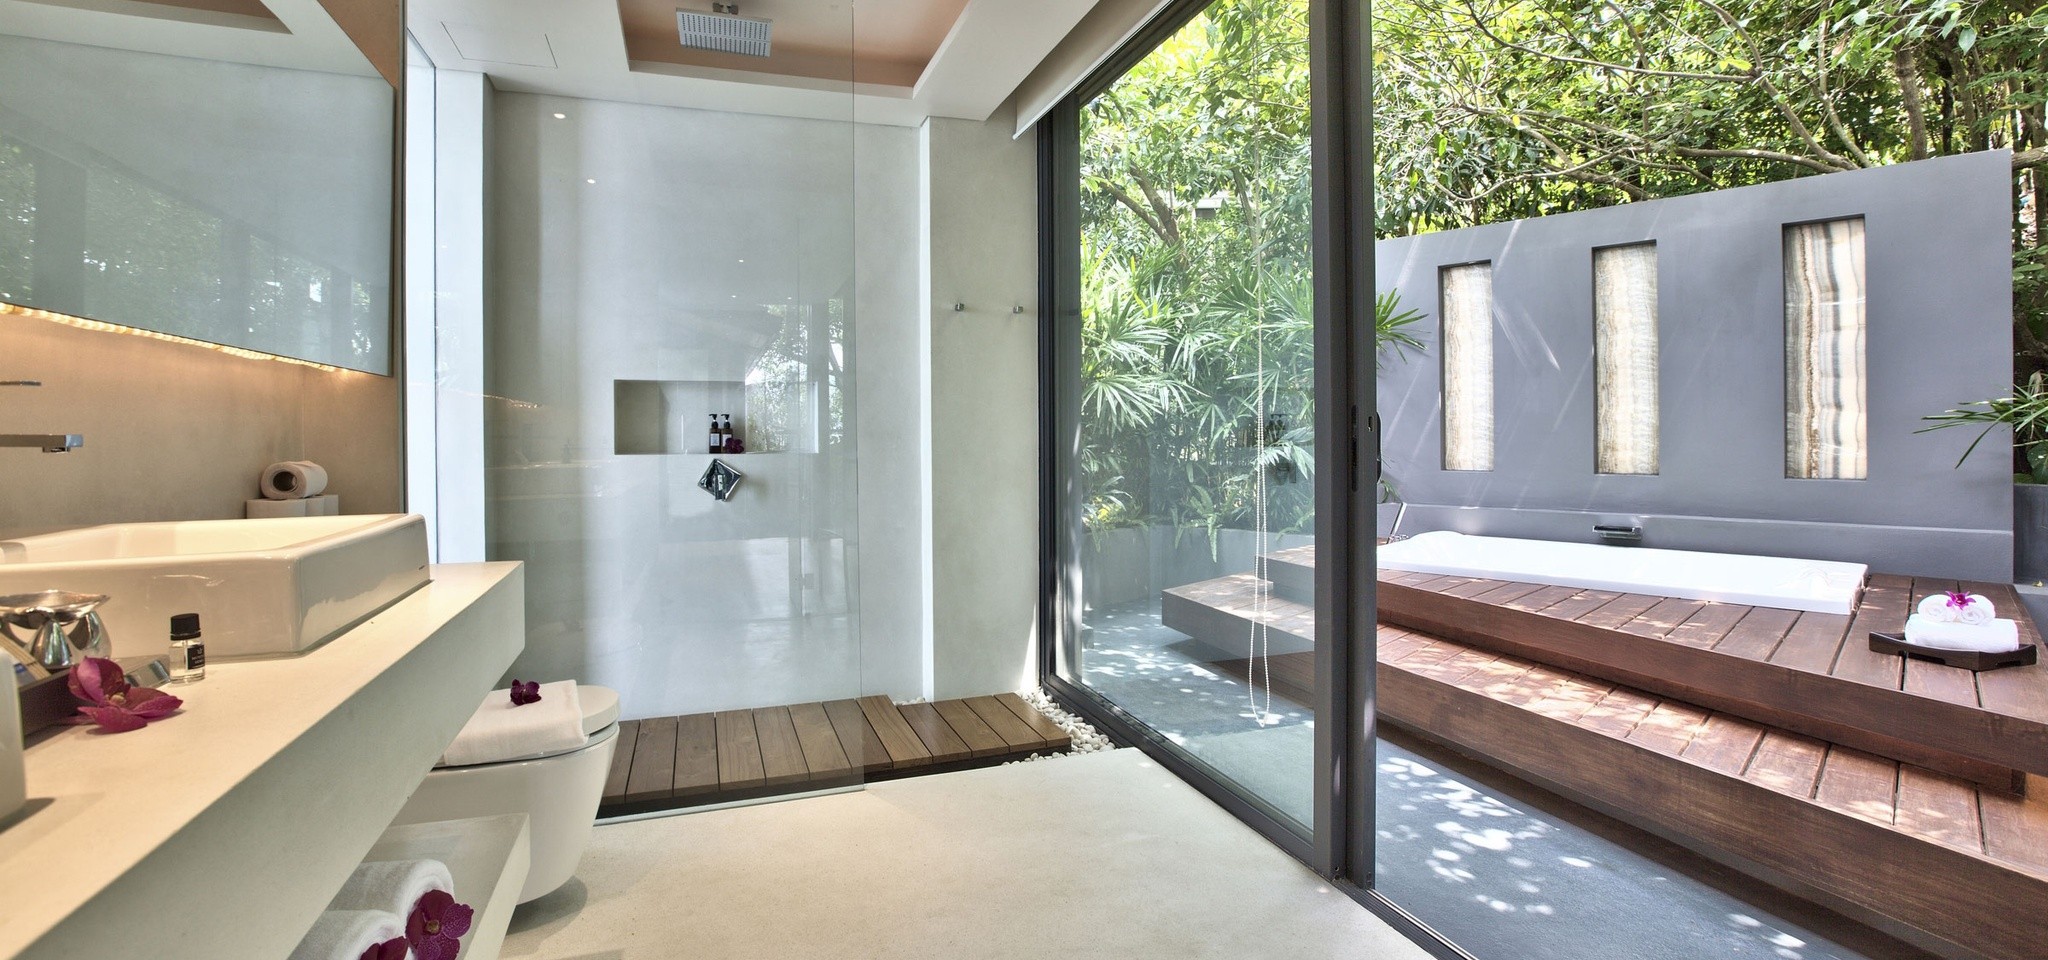 TheView Bathroom3 – The View Samui – Samui – Thailand